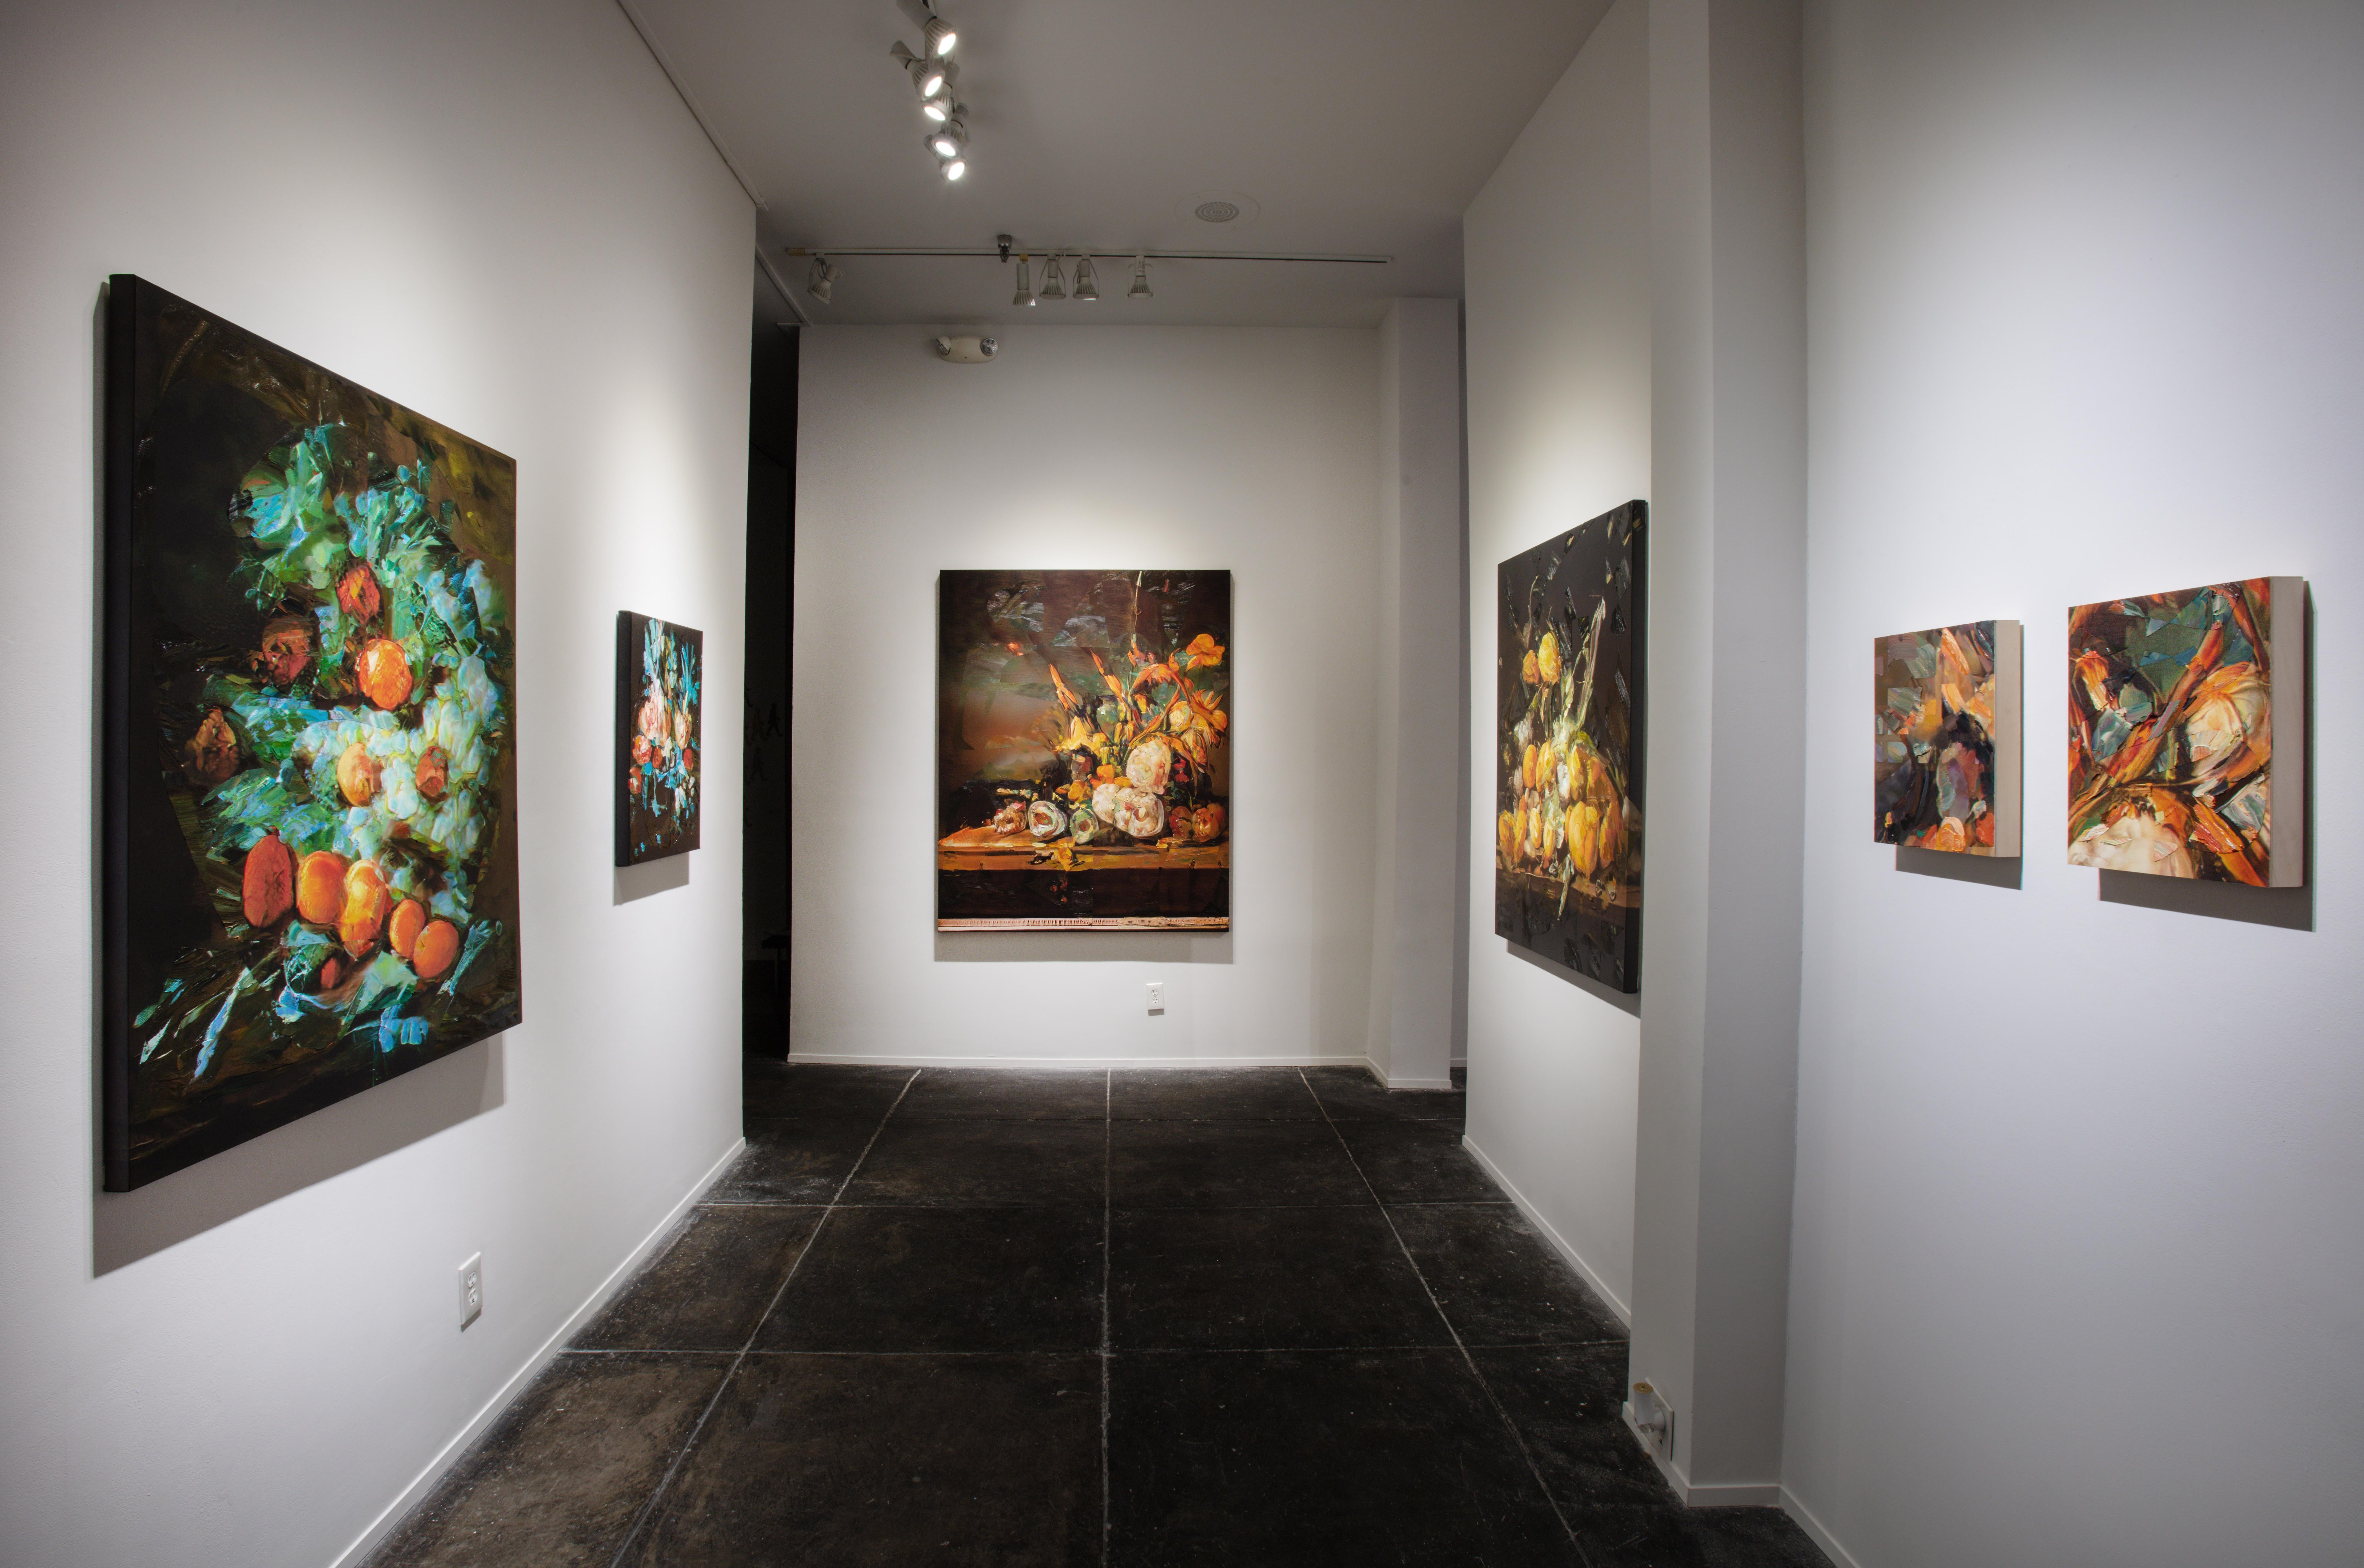 En tant qu'artiste, TIFFANY CALVERT applique des techniques de peinture contemporaines à des images historiques. Ses travaux récents utilisent la nature morte florale hollandaise du XVIIe siècle comme tremplin pour explorer la nature changeante de